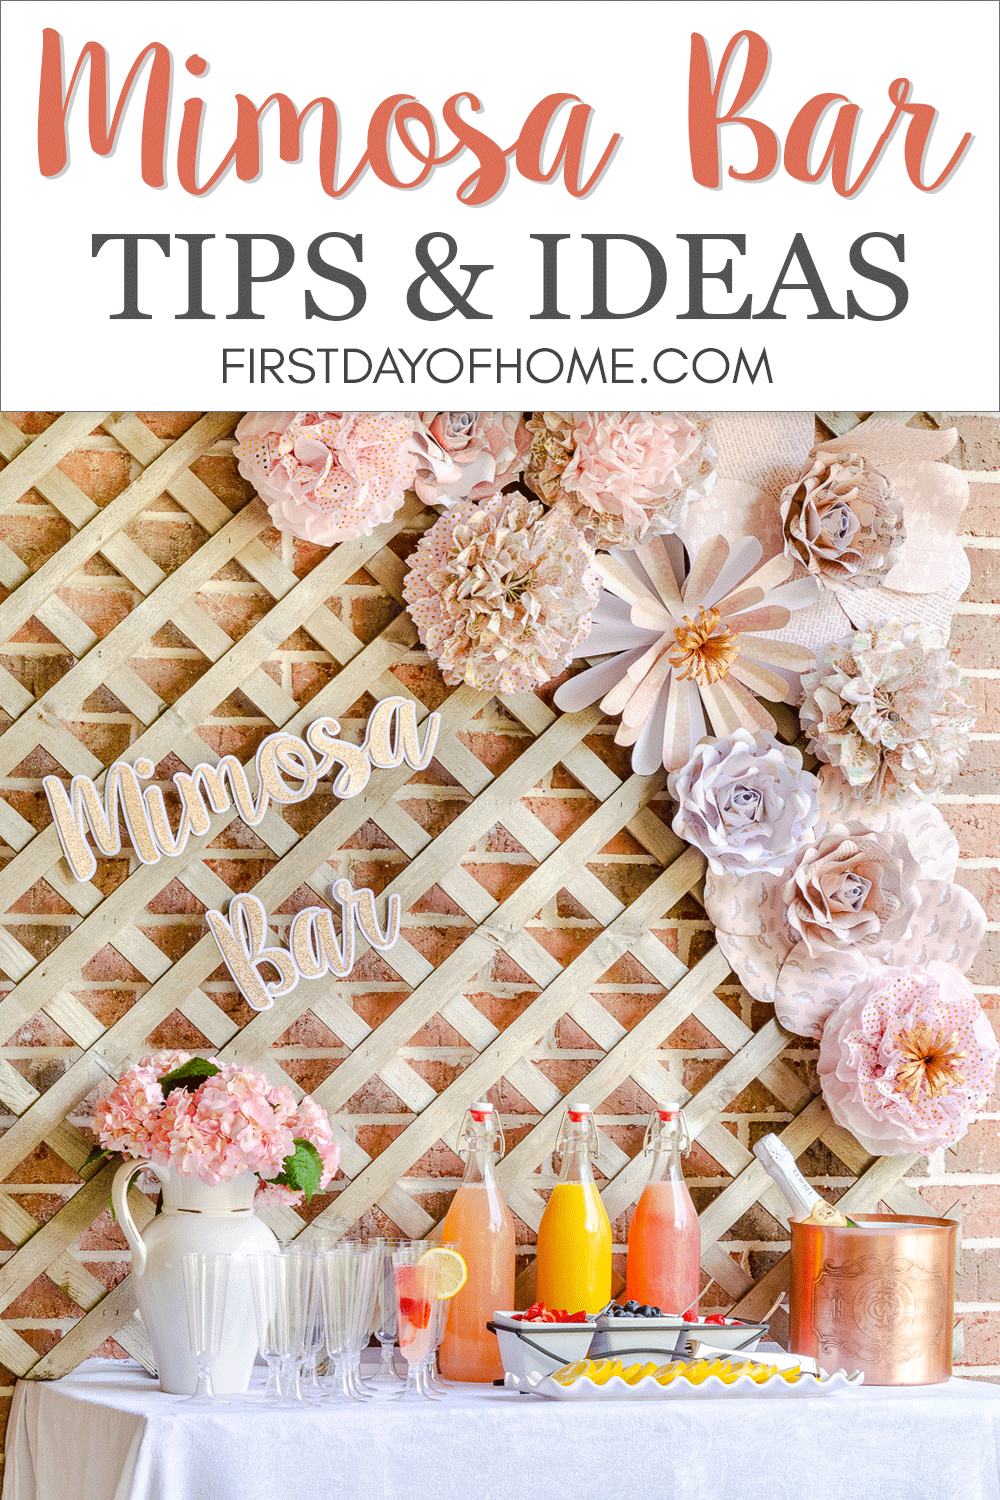 Pin d'idées de bar à mimosa avec décor de fleurs en papier, pompons et jus de fruits